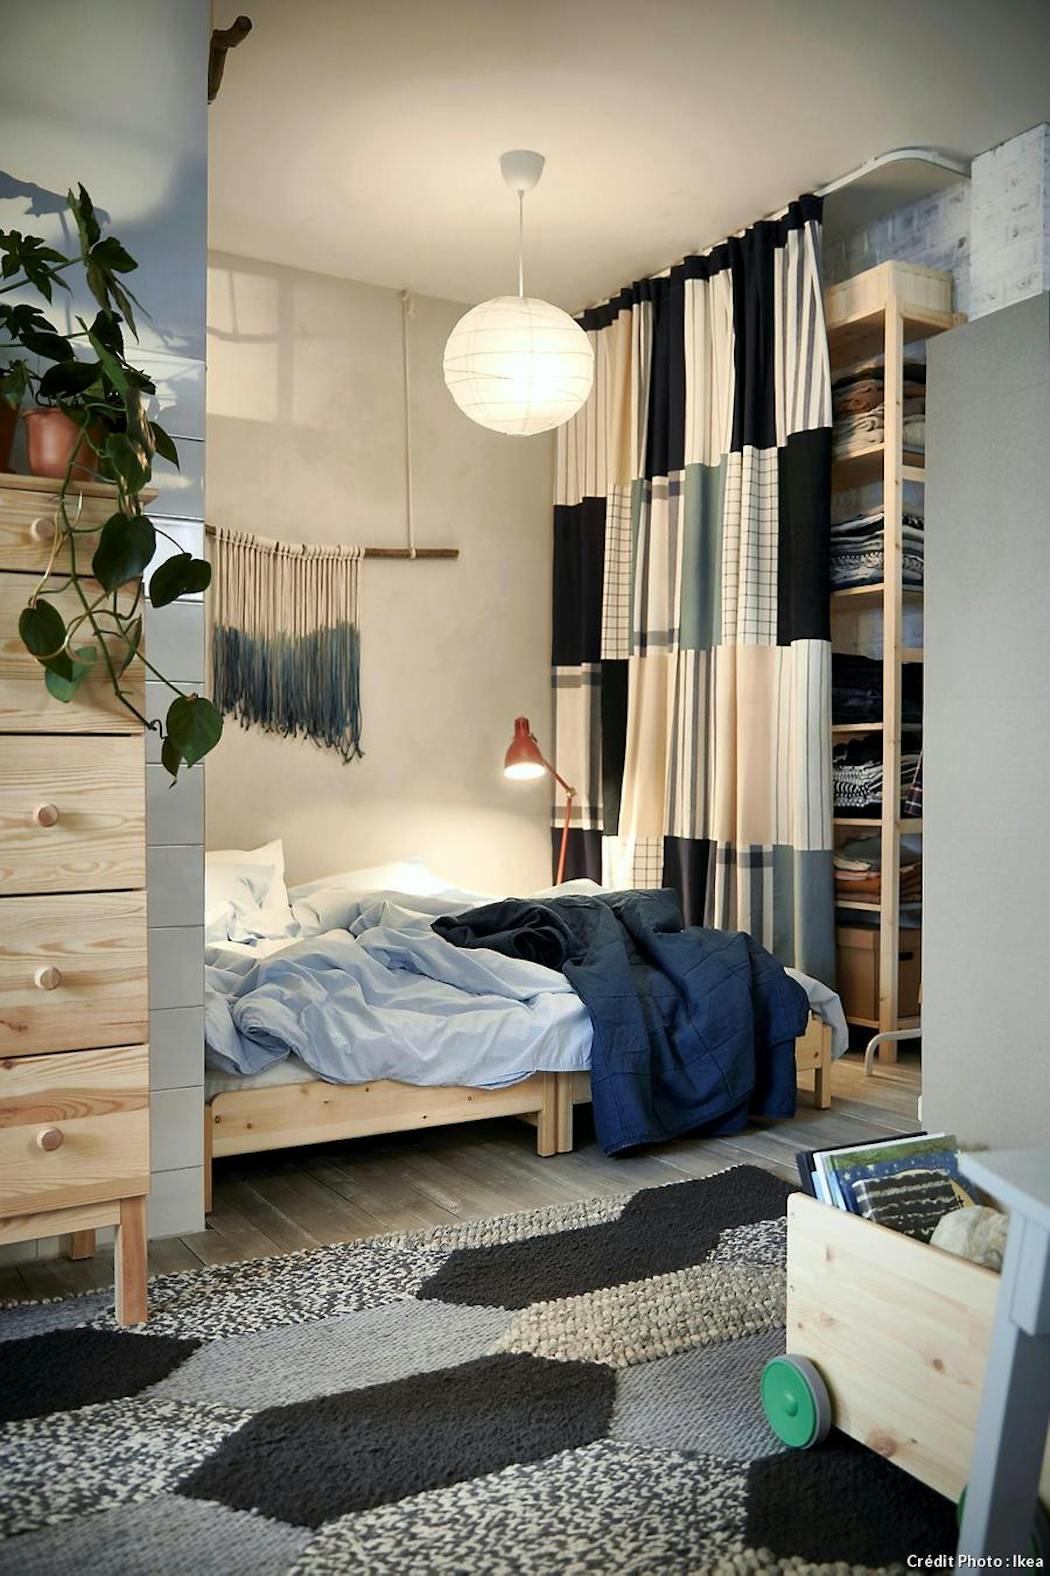 Le lit rond pour meubler la chambre à coucher d'une manière originale et  créative